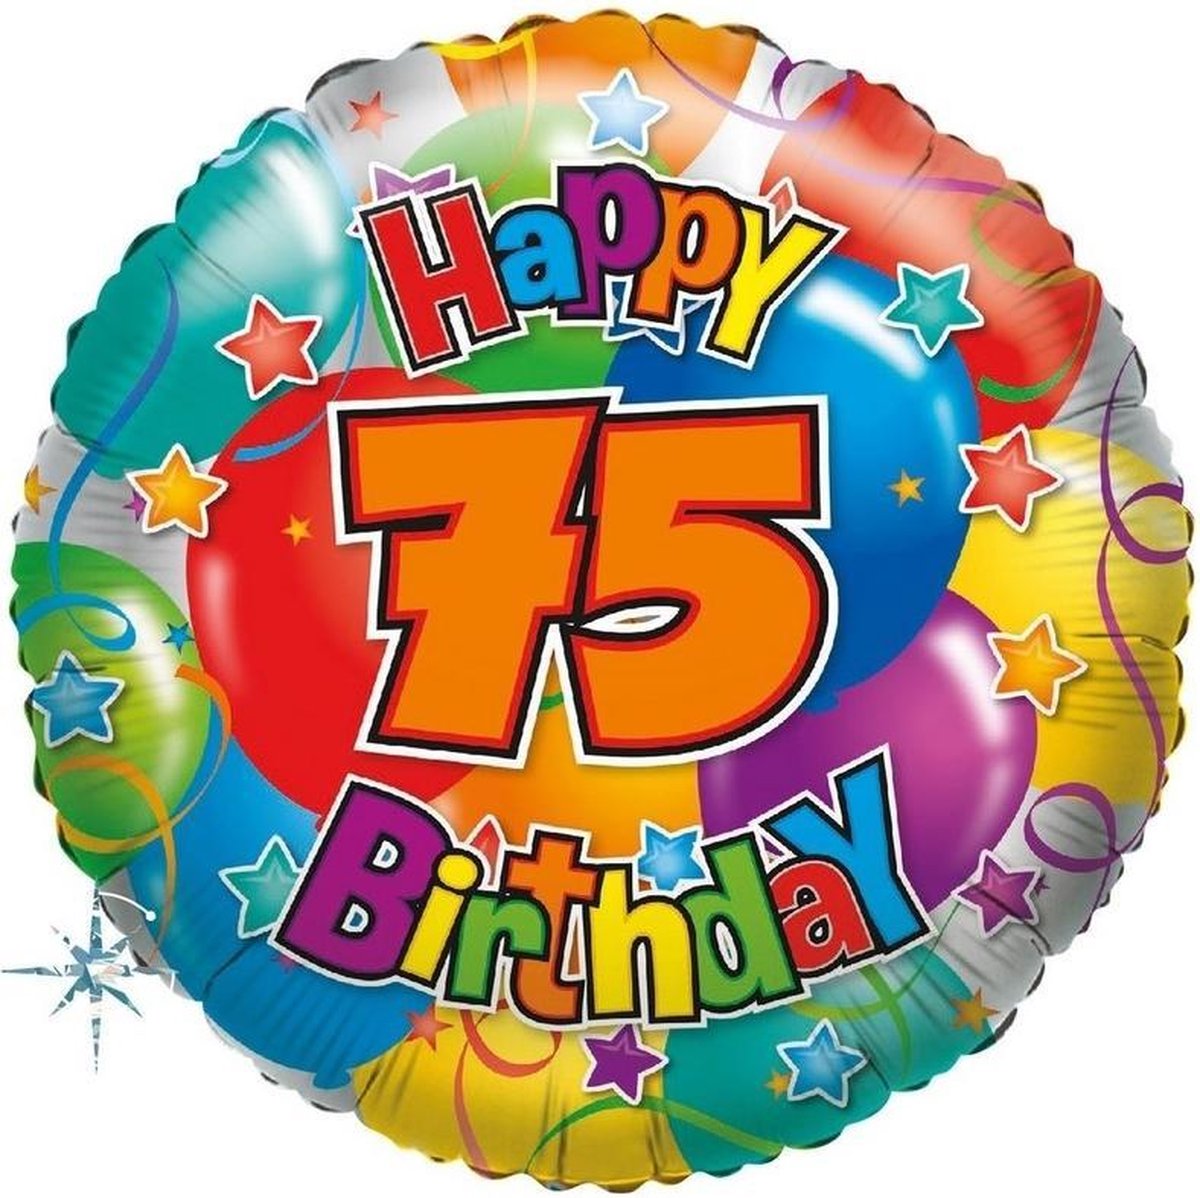 Arctic Het is de bedoeling dat Wees tevreden Folie ballon 75 Happy Birthday 35 cm - Folieballon verjaardag 75 jaar 35 cm  | bol.com